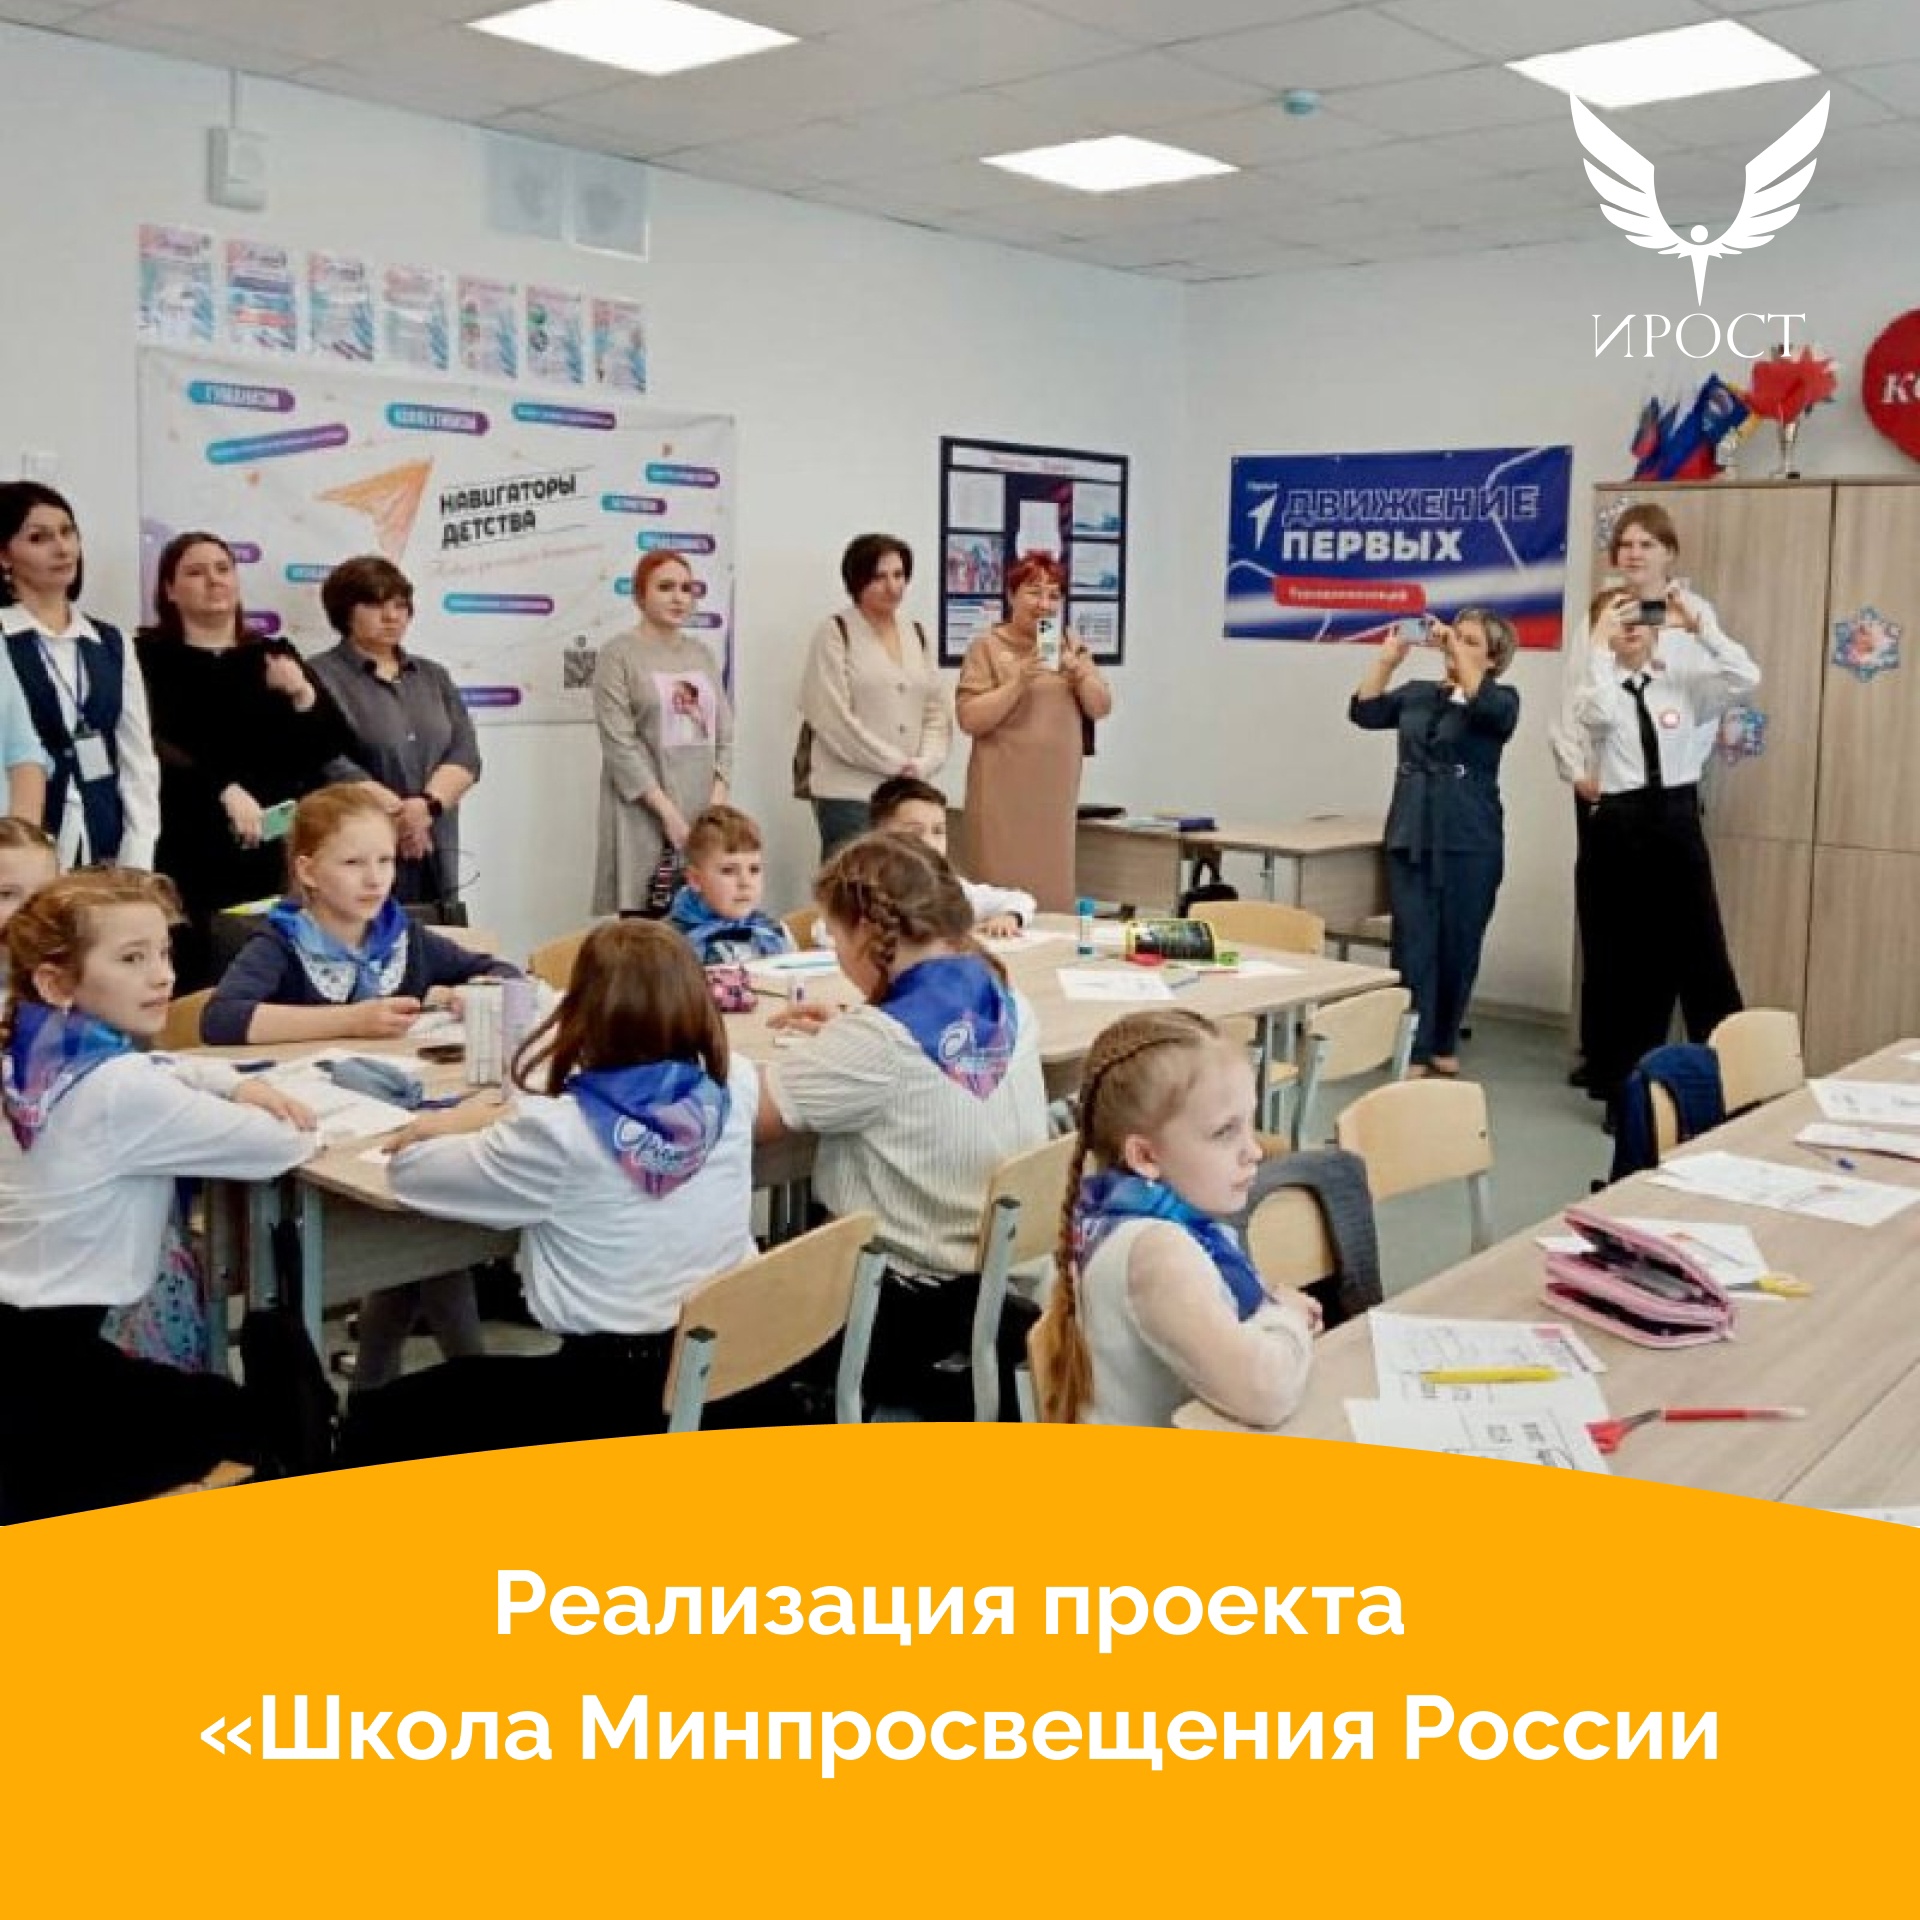 Реализация проекта «Школа Минпросвещения России.